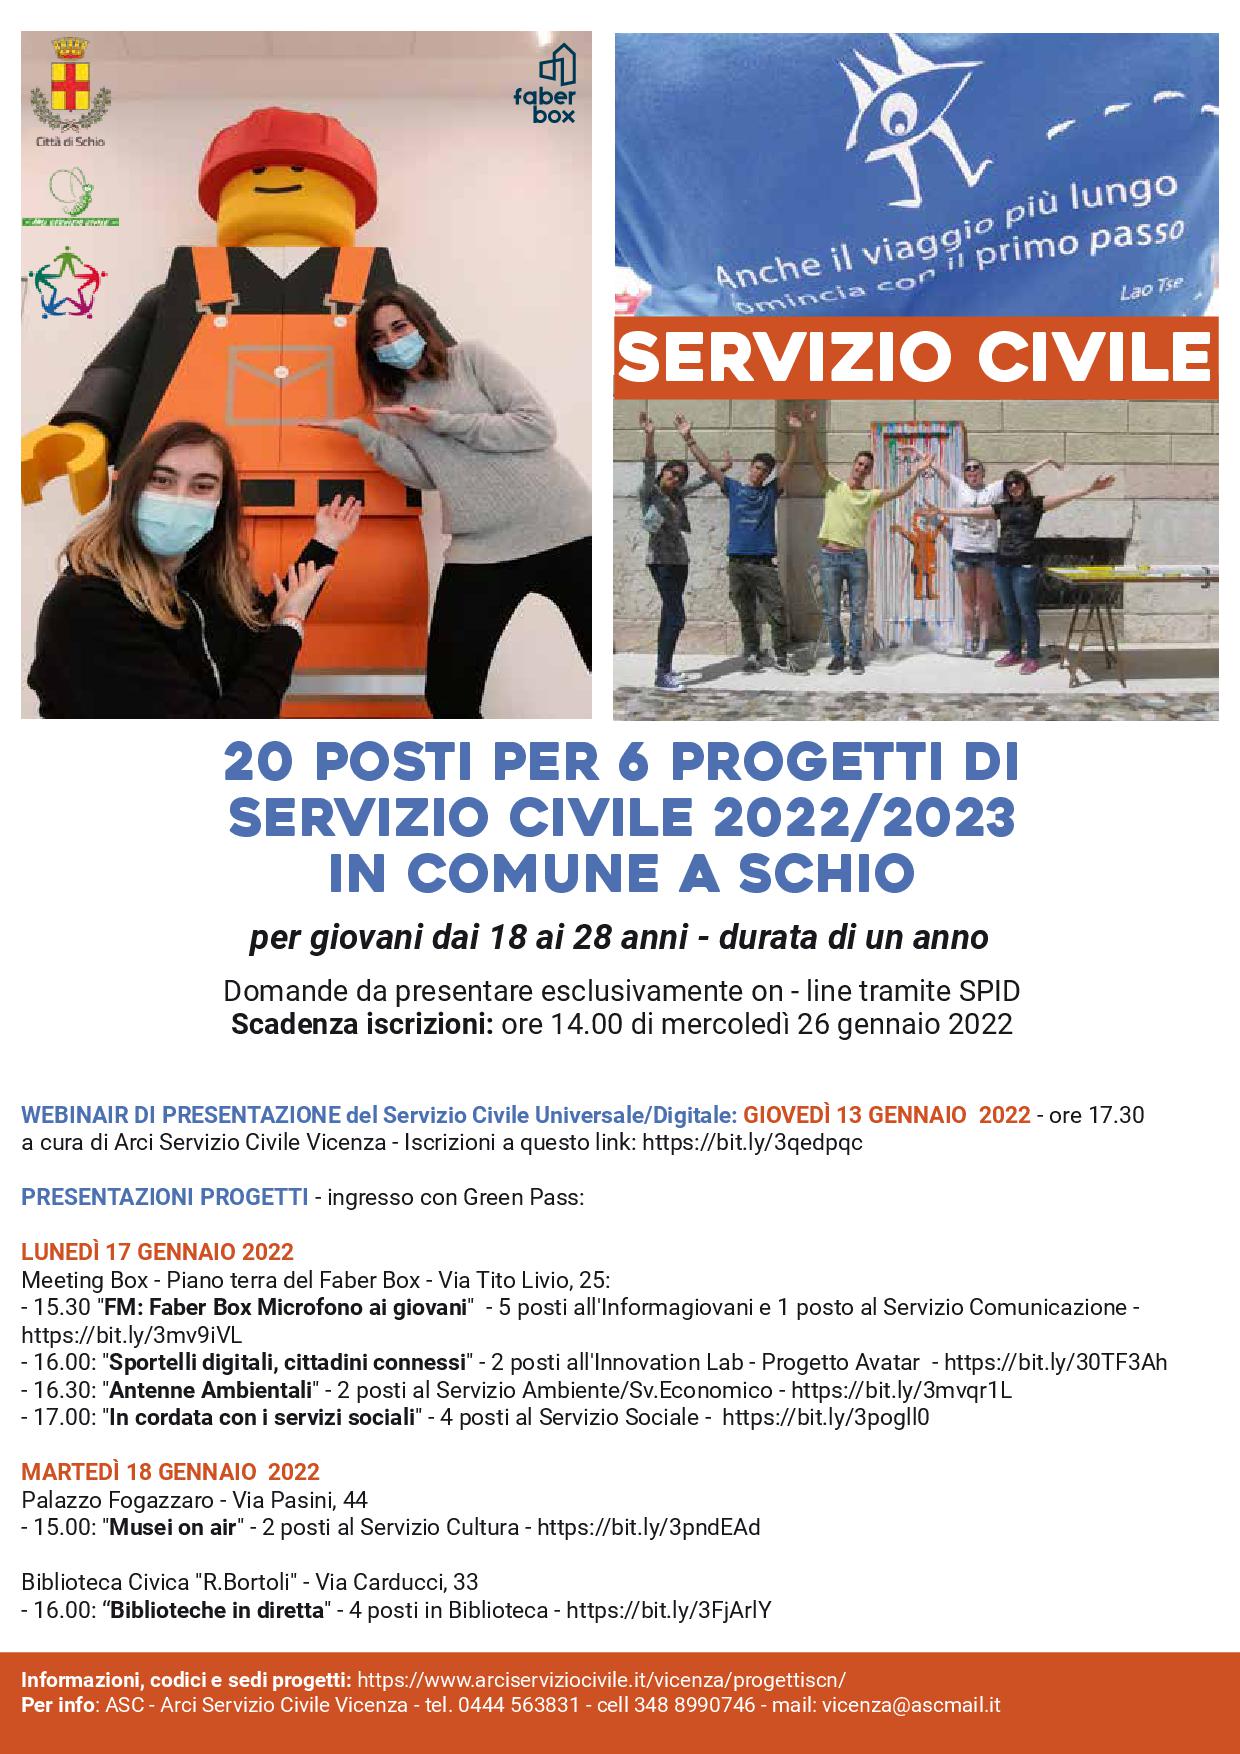 Nuovo bando servizio civile  2022/2023 a Schio!